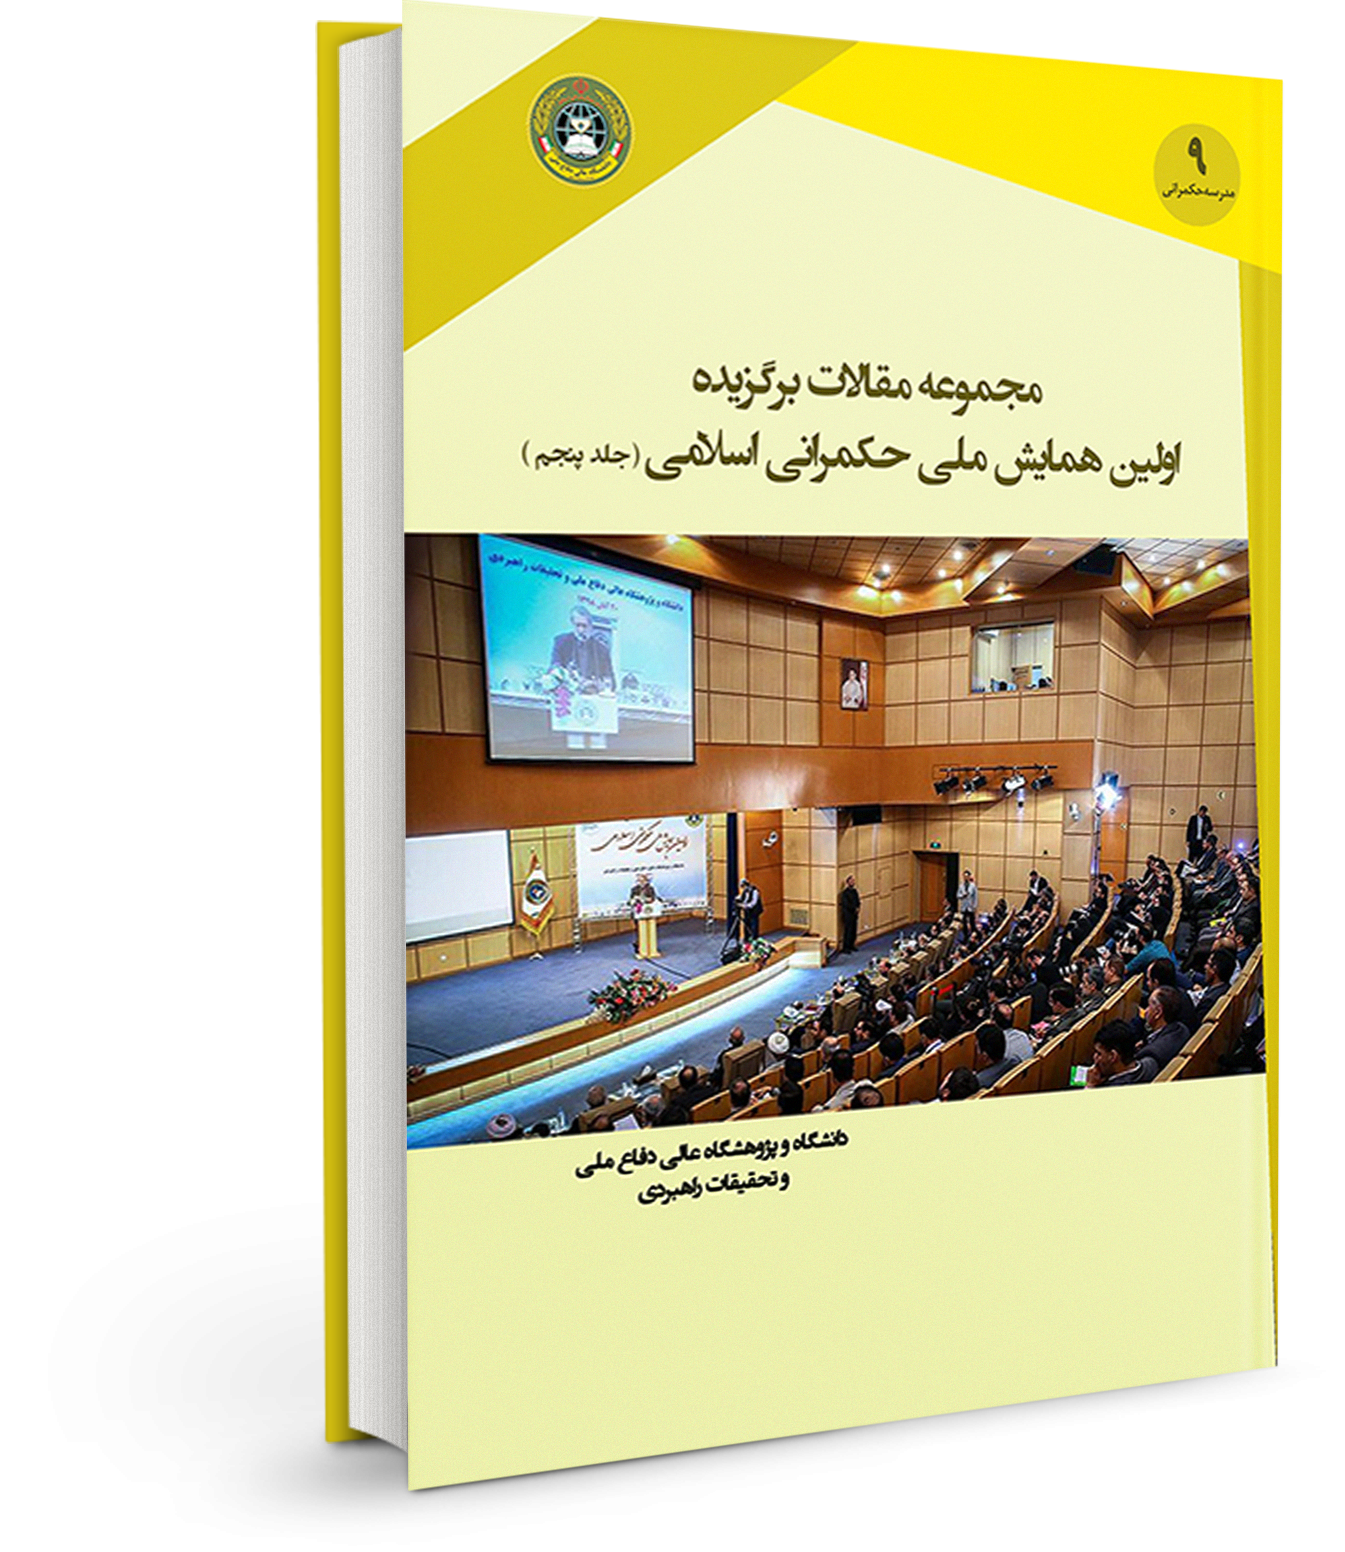 مجموعه مقالات برگزیده اولین همایش ملی حکمرانی اسلامی (جلد پنجم)